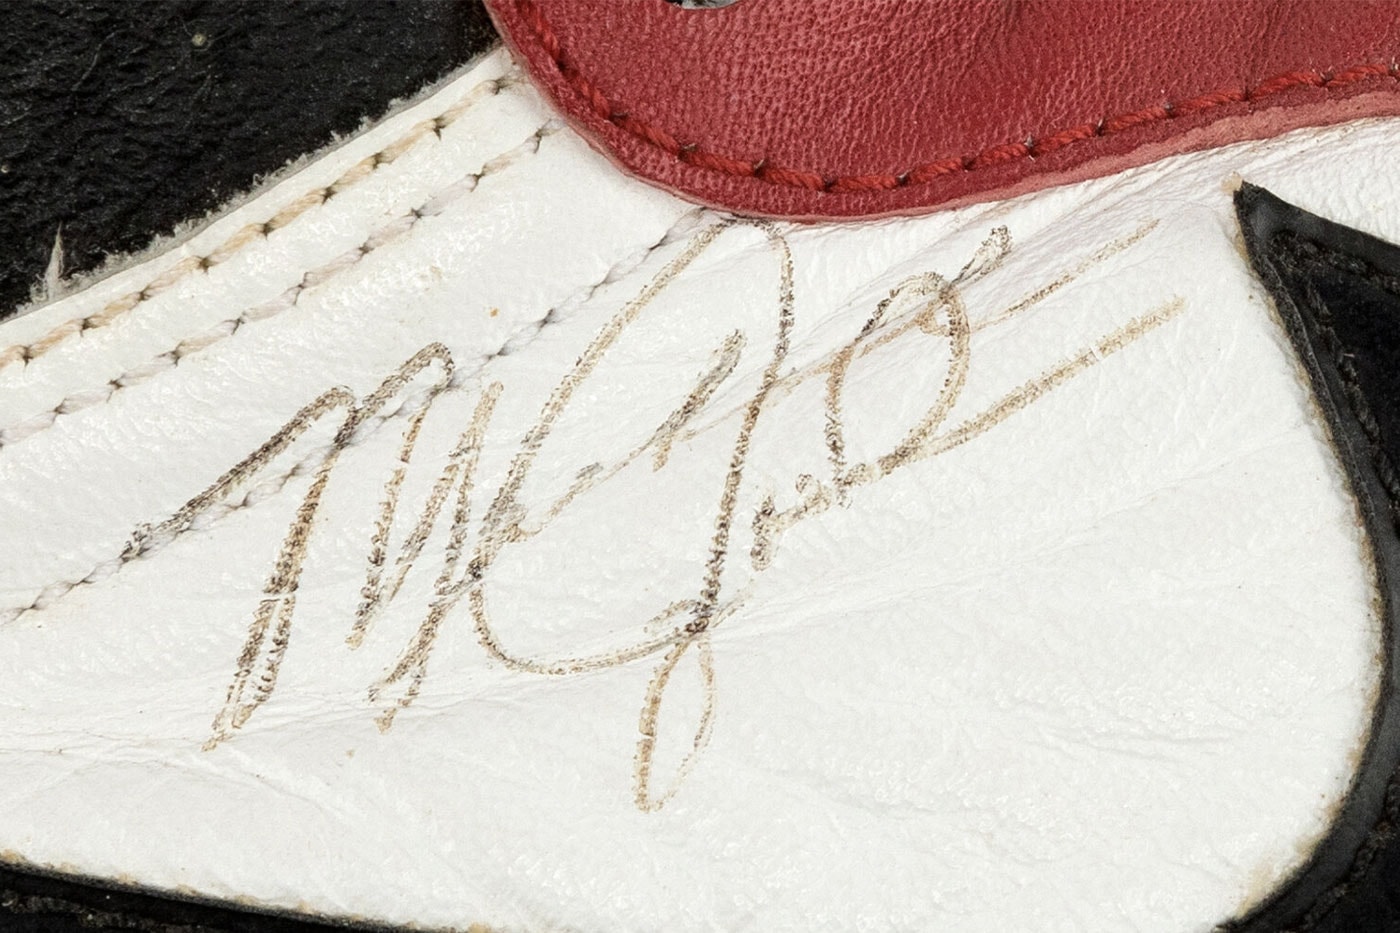 マイケル・ジョーダン実着用のエアジョーダン1 が1億円以上で落札 ダンク ソール dunk A Signed Pair of Michael Jordan's 1986 Game Worn Nike Air Jordan 1 Sneakers Is Available for Auction heritage auctions sports memorabilia chicago bulls 